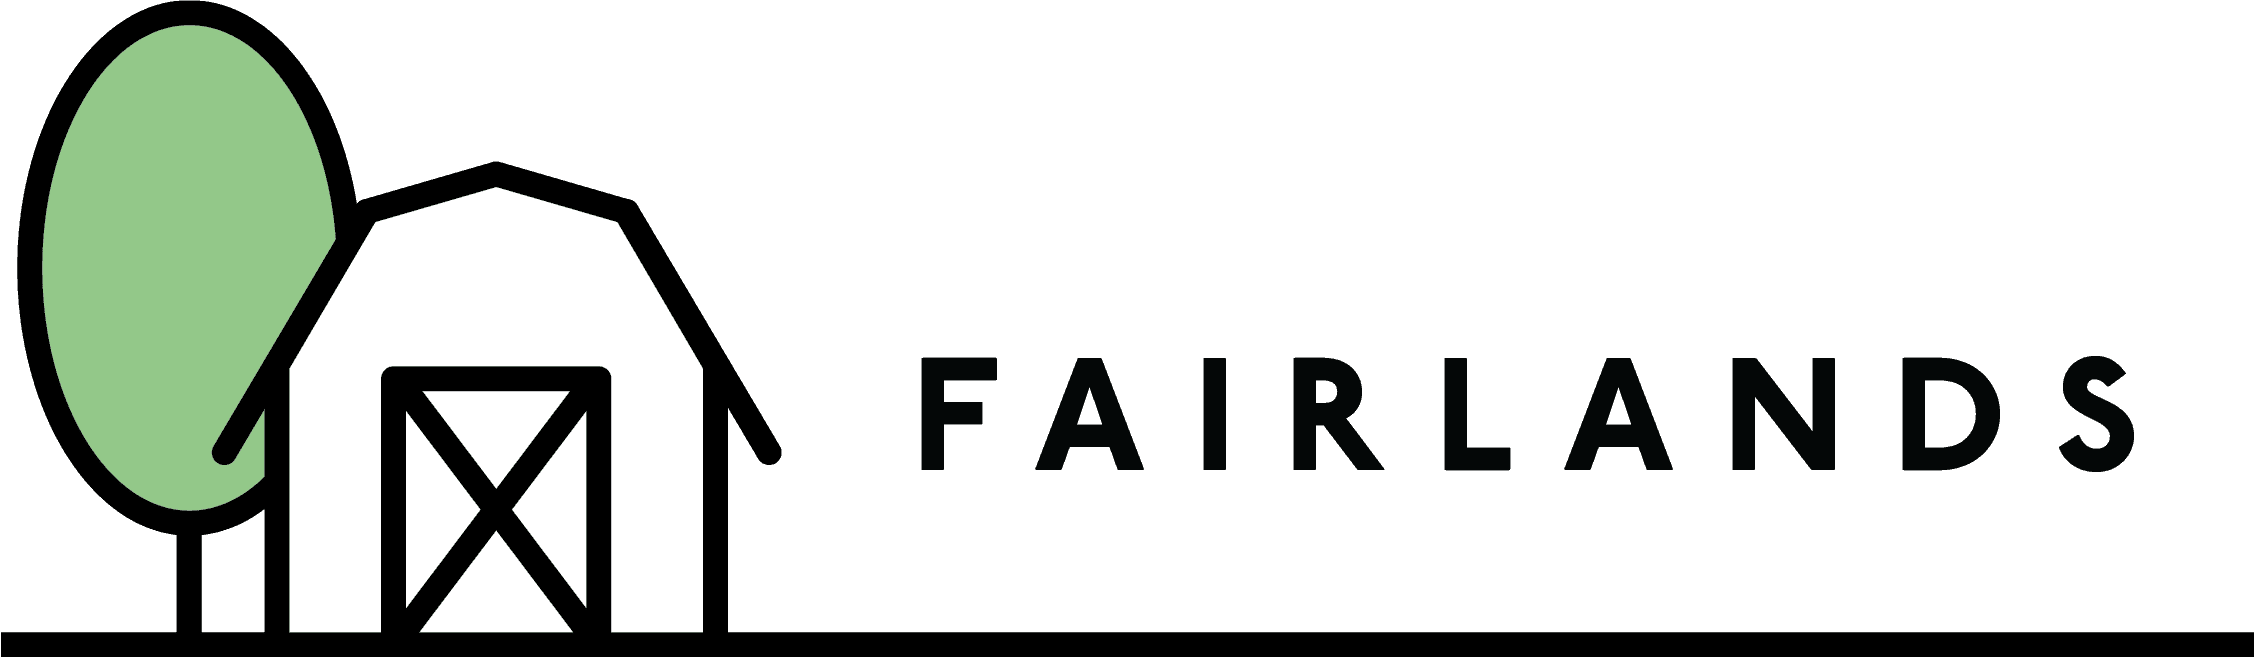 fairlands-logo